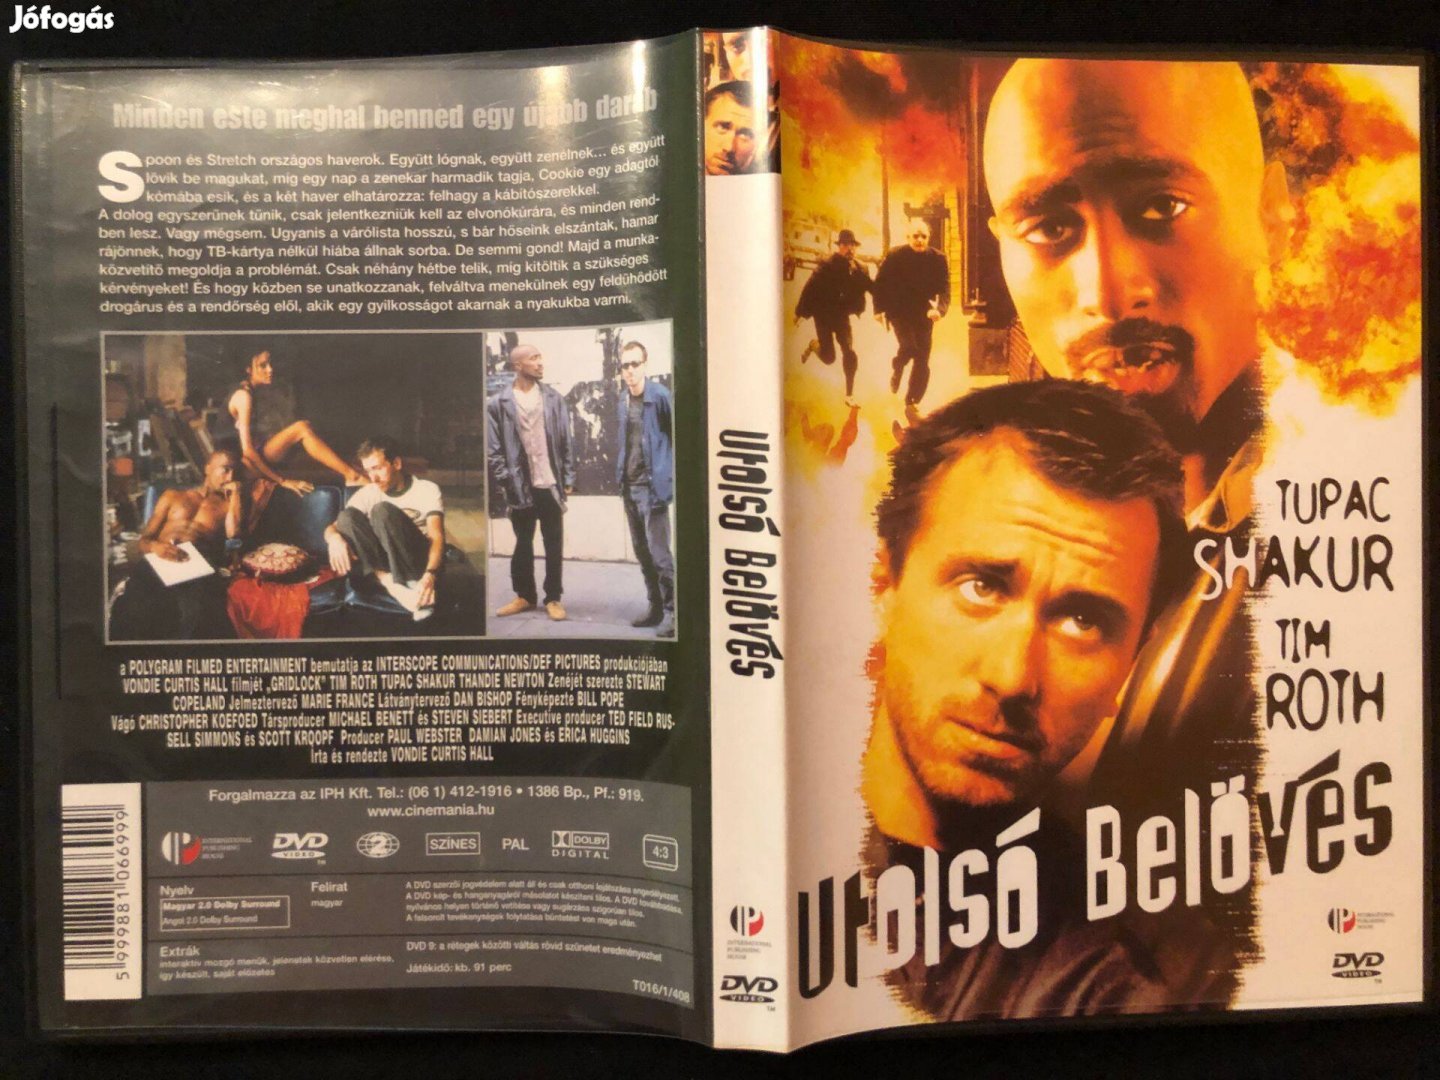 Utolsó belövés (karcmentes, Tupac Shakur, Tim Roth) DVD